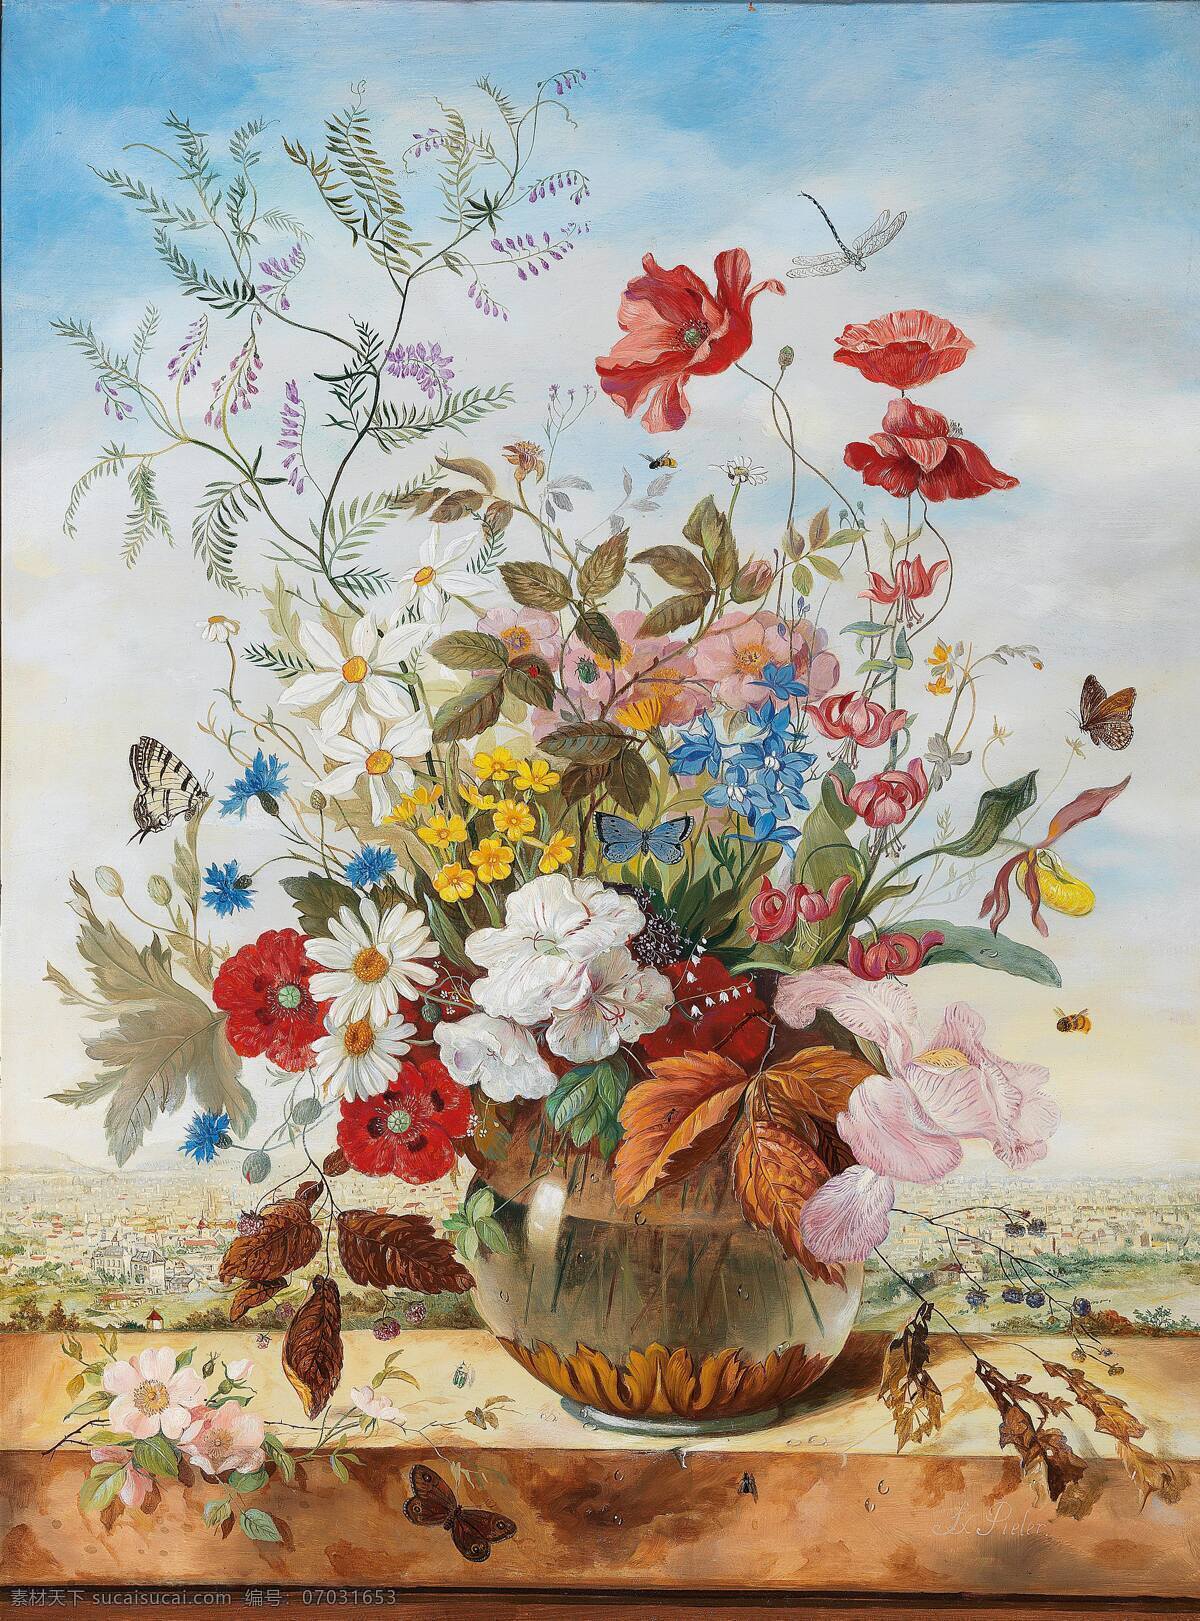 弗朗茨 萨维尔 派 乐 作品 奥地利画家 静物鲜花 瓶花图 永恒之美 混搭鲜花 玻璃花瓶 19世纪油画 油画 文化艺术 绘画书法